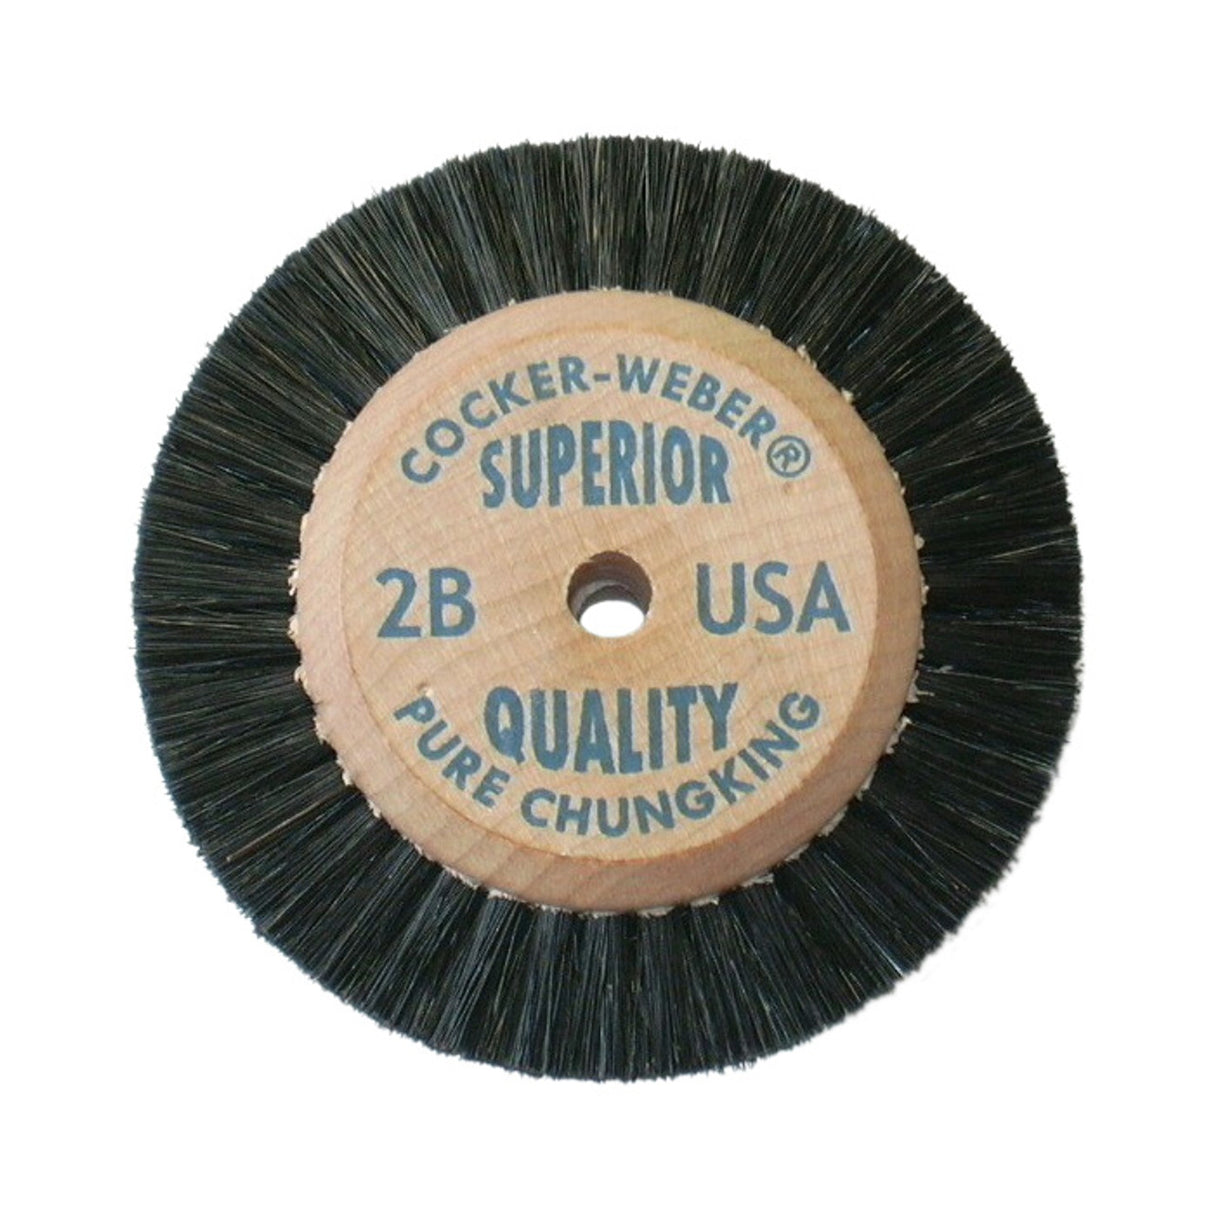 Cocker-Weber #2B Superior Wood Hub Wheel Brush - #73 SC